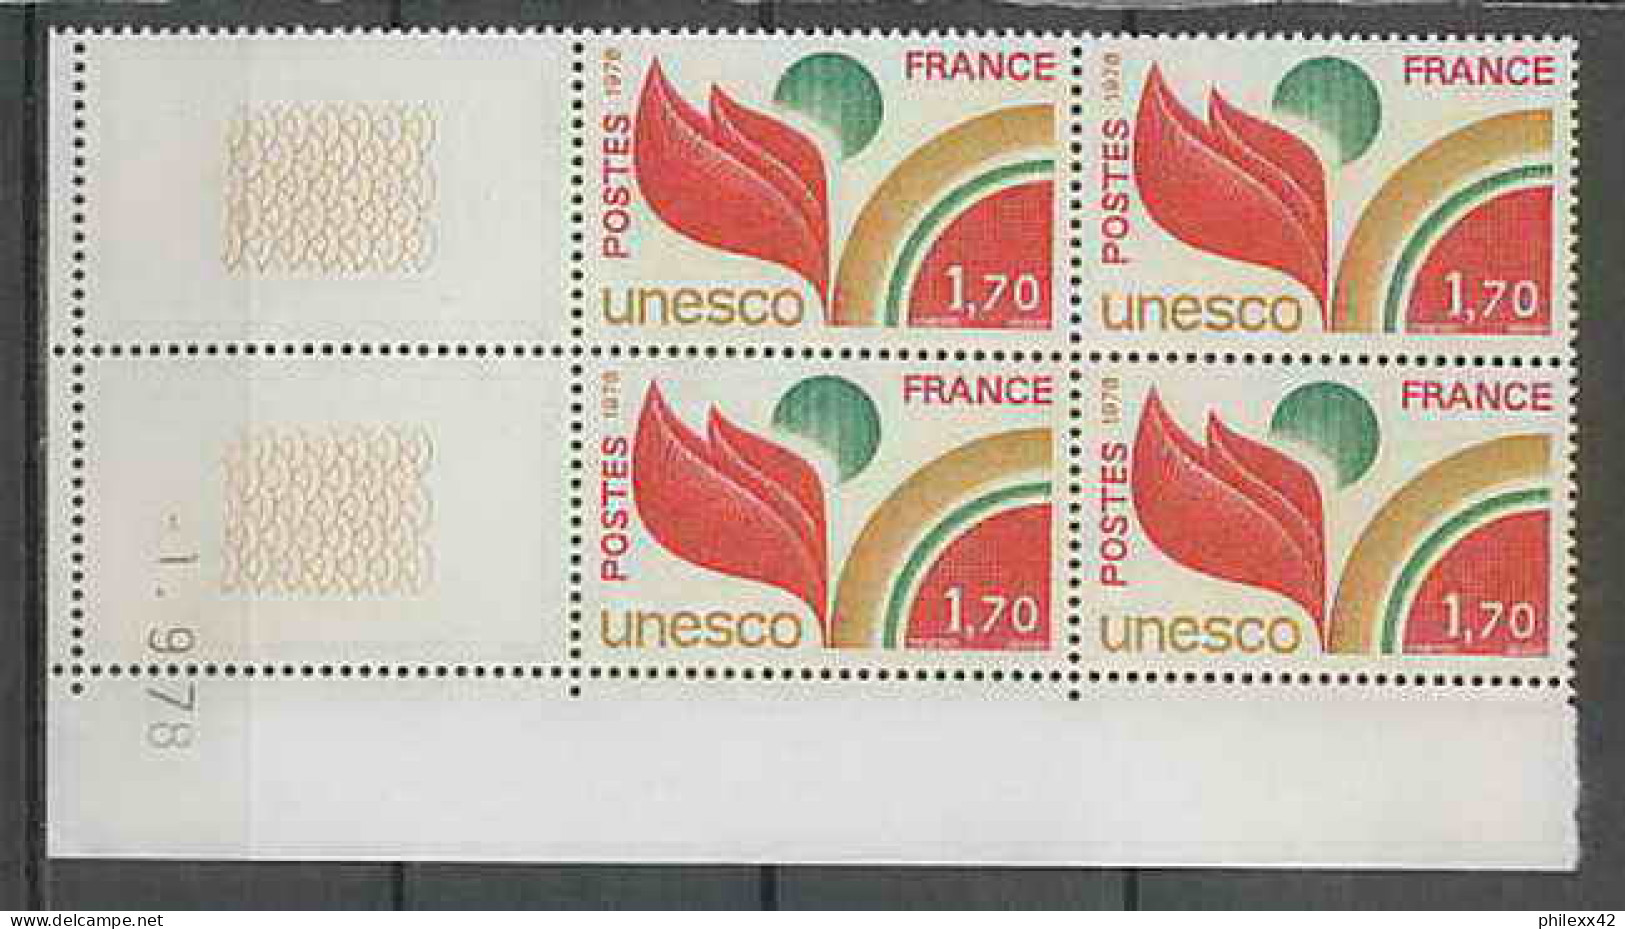 1301 - France - Coin Daté TB Neuf ** Service Unesco N°57 Date 1/9/1976 Sans Trait  - Service